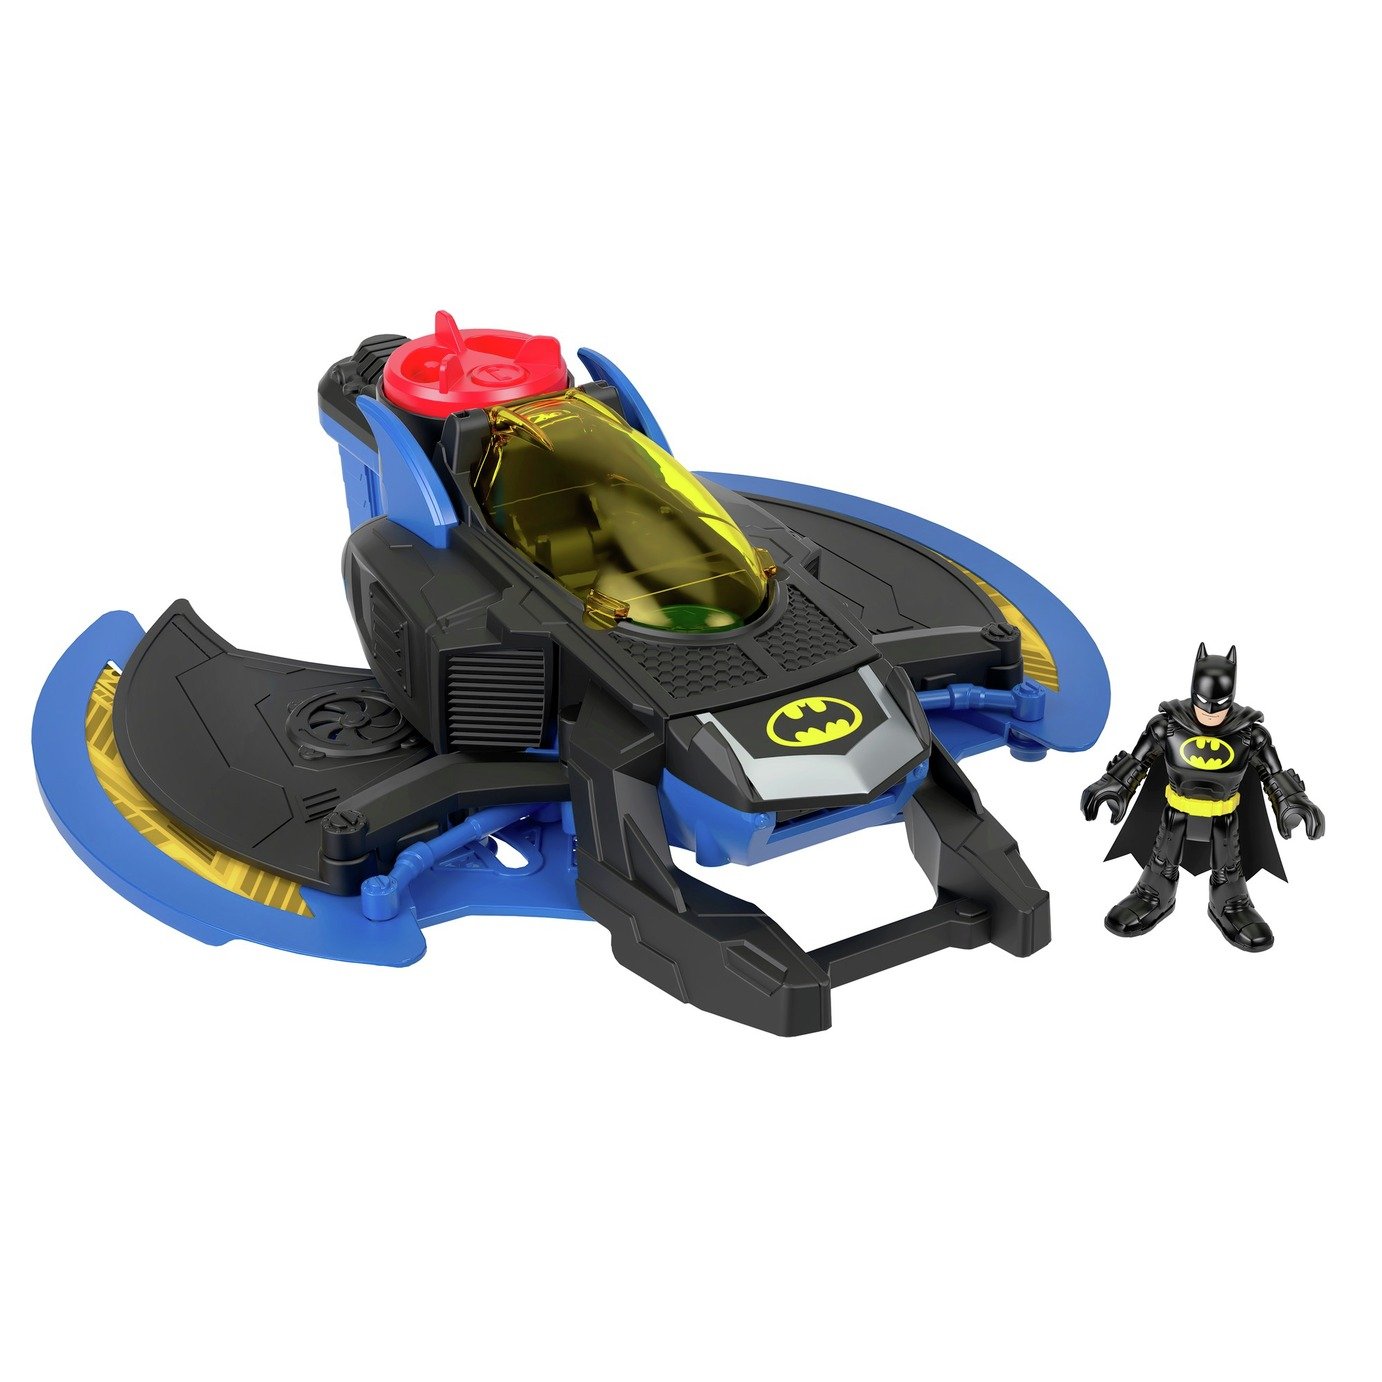 Imaginext DC Super Friends Batwing with Batman Figure